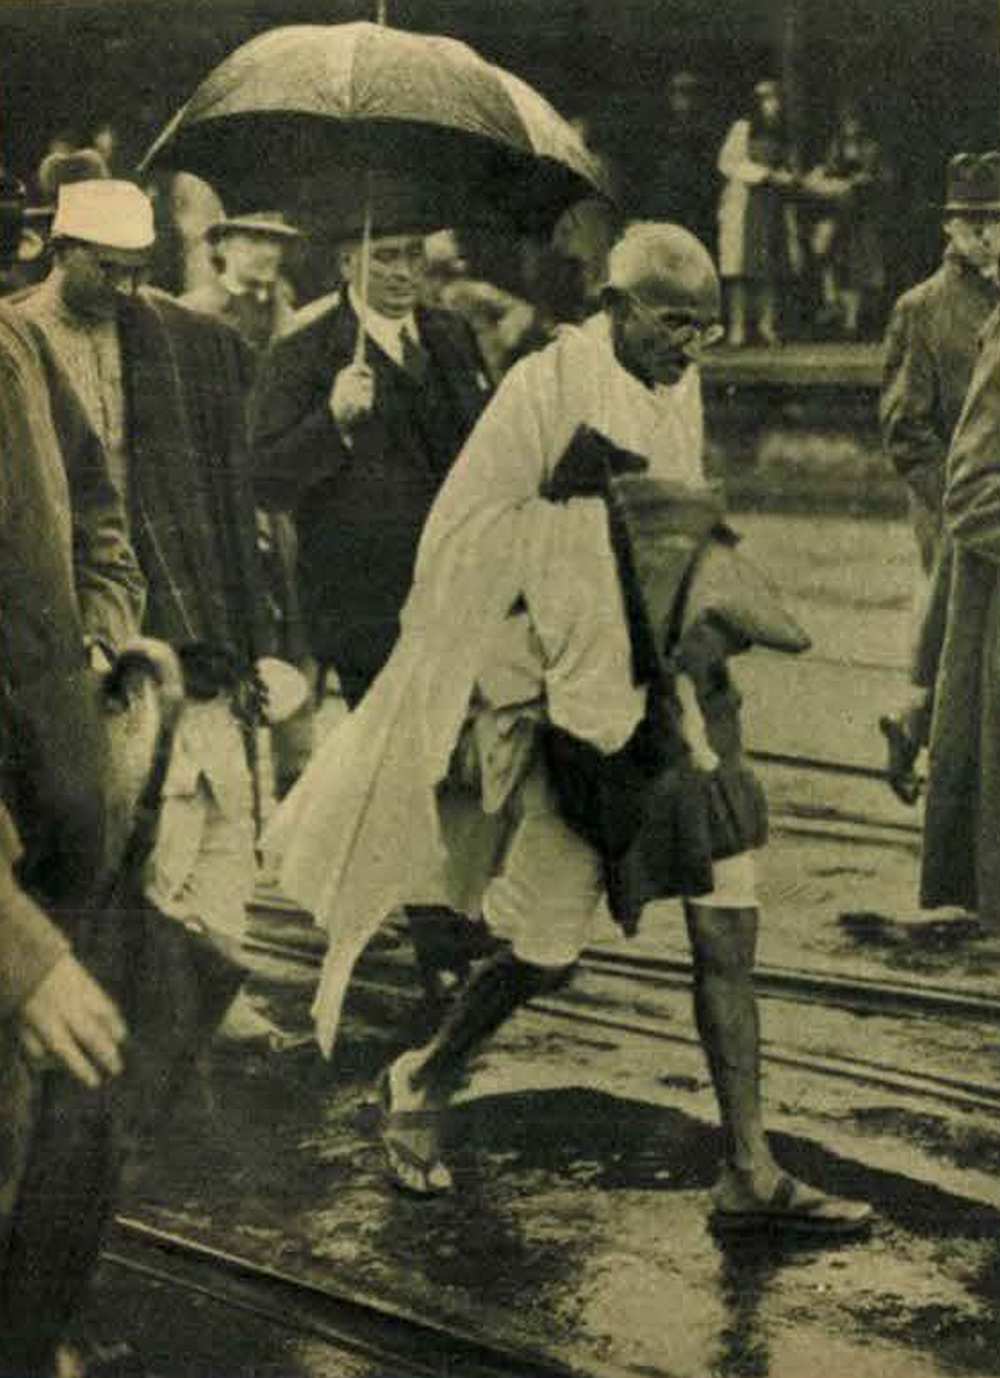 Gándhi Londonban a kerekasztal-konferencián. A Mahatma zuhogó esőben, födetlen fővel és lenge vászonöltözetben száll be Folkestone-ban a londoni vonatba. In: Képes Pesti Hírlap, 1931. szeptember 16., 2. – Törzsgyűjtemény https://nektar.oszk.hu/hu/manifestation/1018755